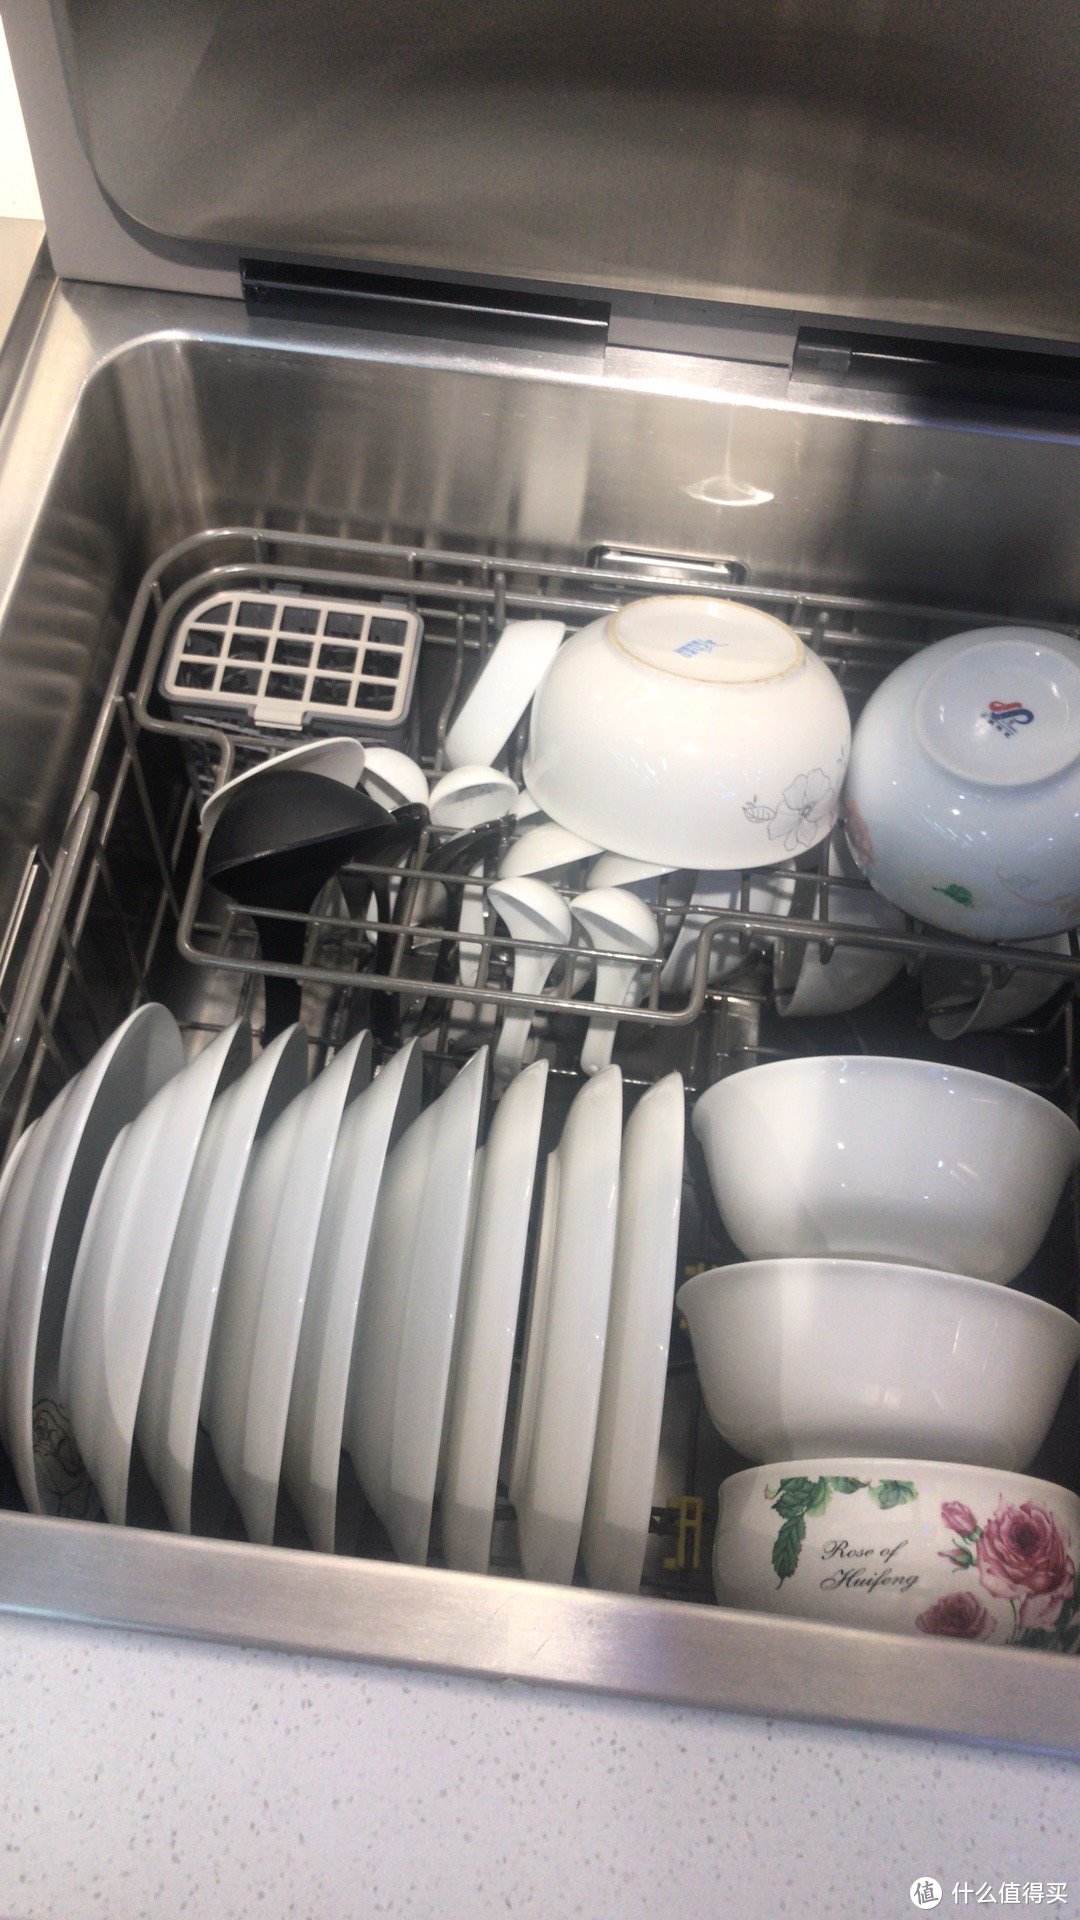 方太水槽洗碗机Q8